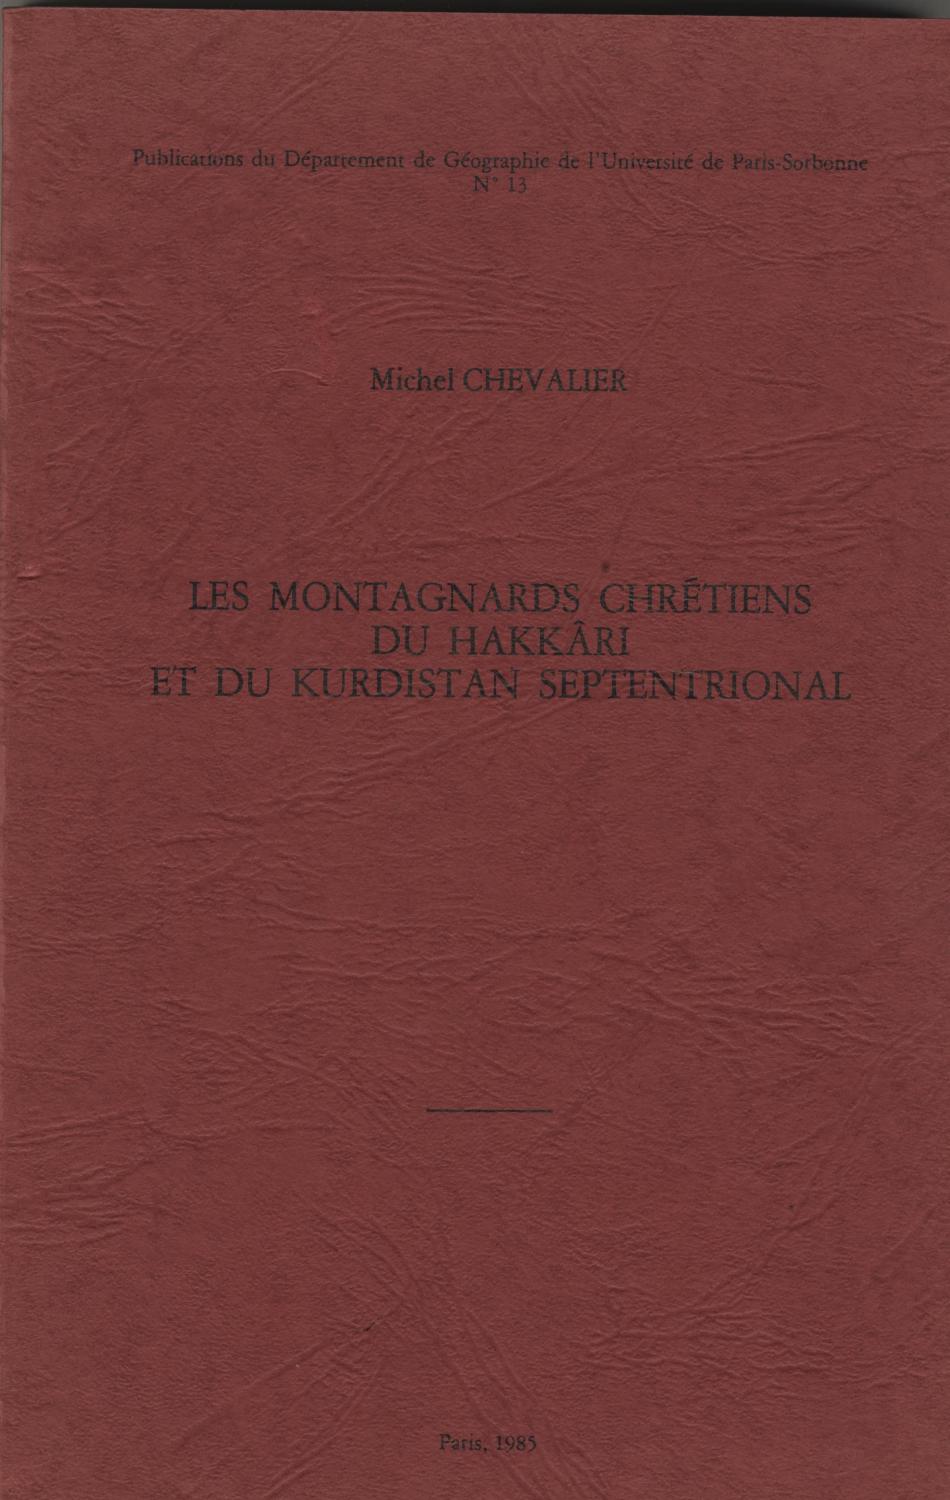 Les Montagnards Chrétiens du Hakkari et du Kurdistan Septentrional. - Chevalier, Michel.